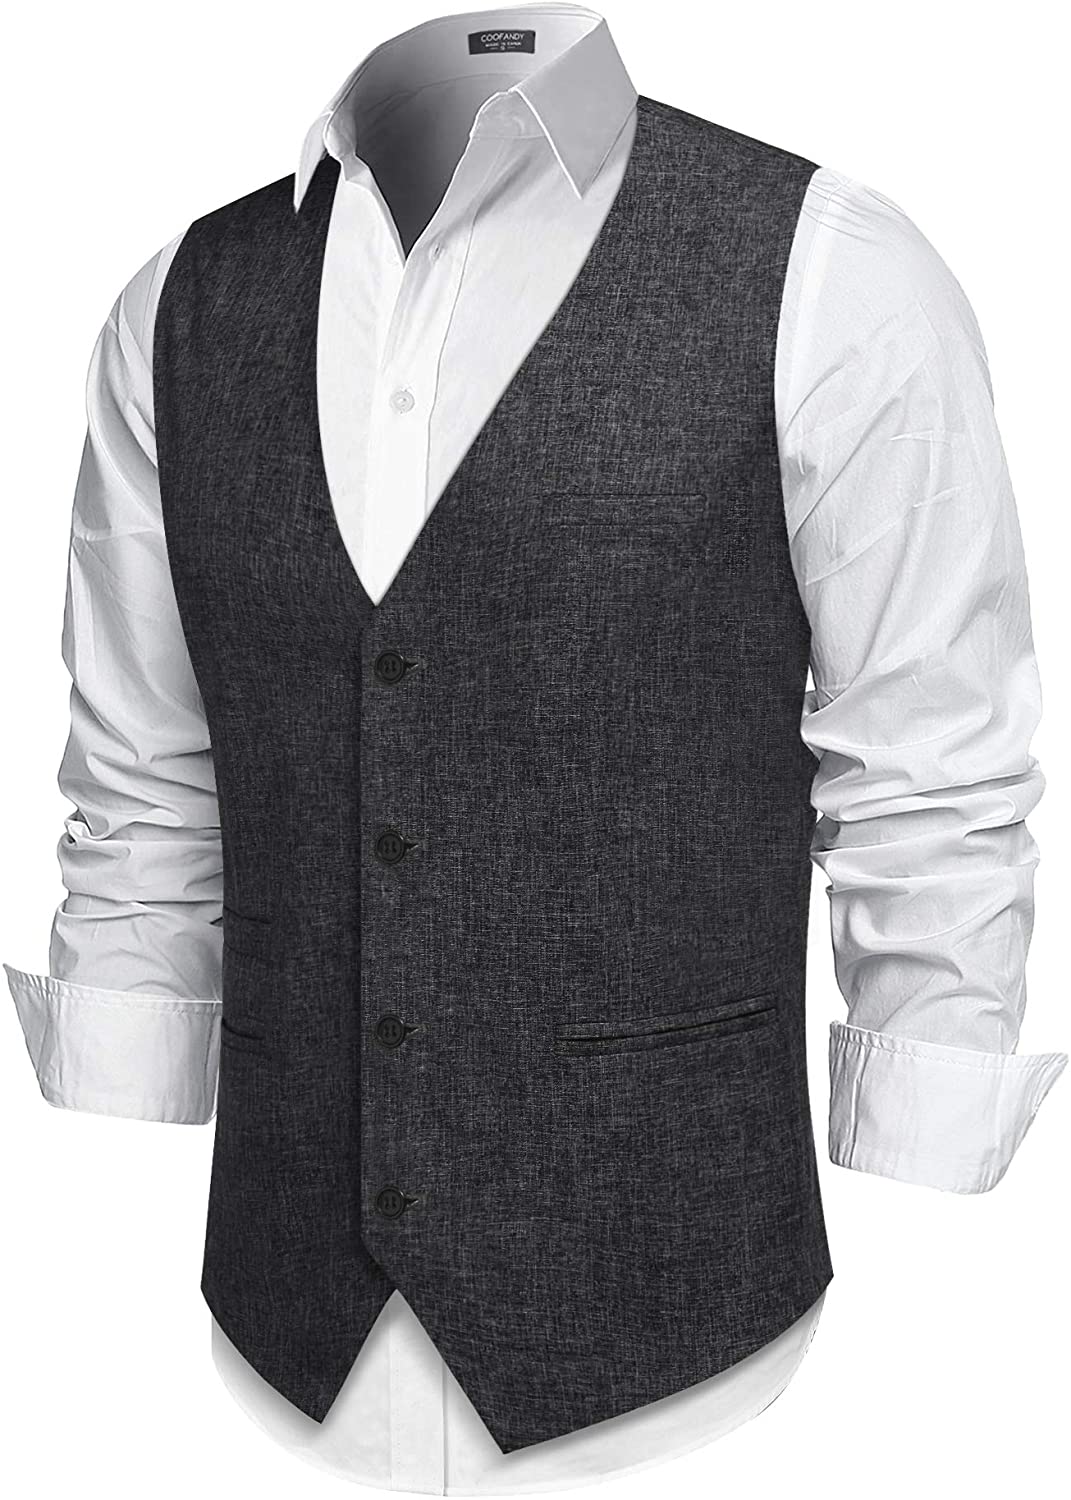 COOFANDY Men's Casual Business Vests Lightweight Waistcoat Slim Fit ...